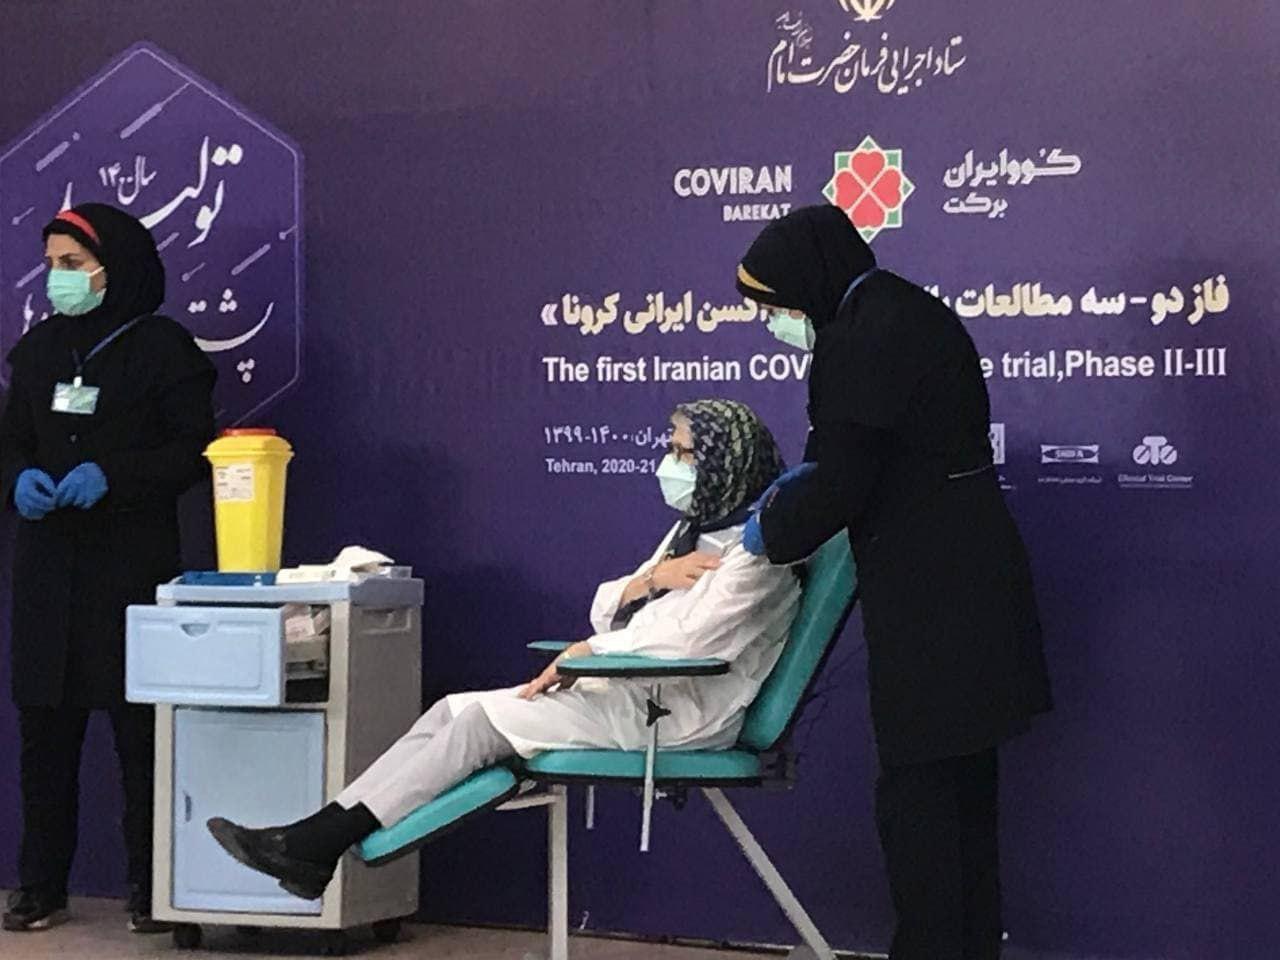 لحظه تزریق واکسن ایرانی به مینو محرز